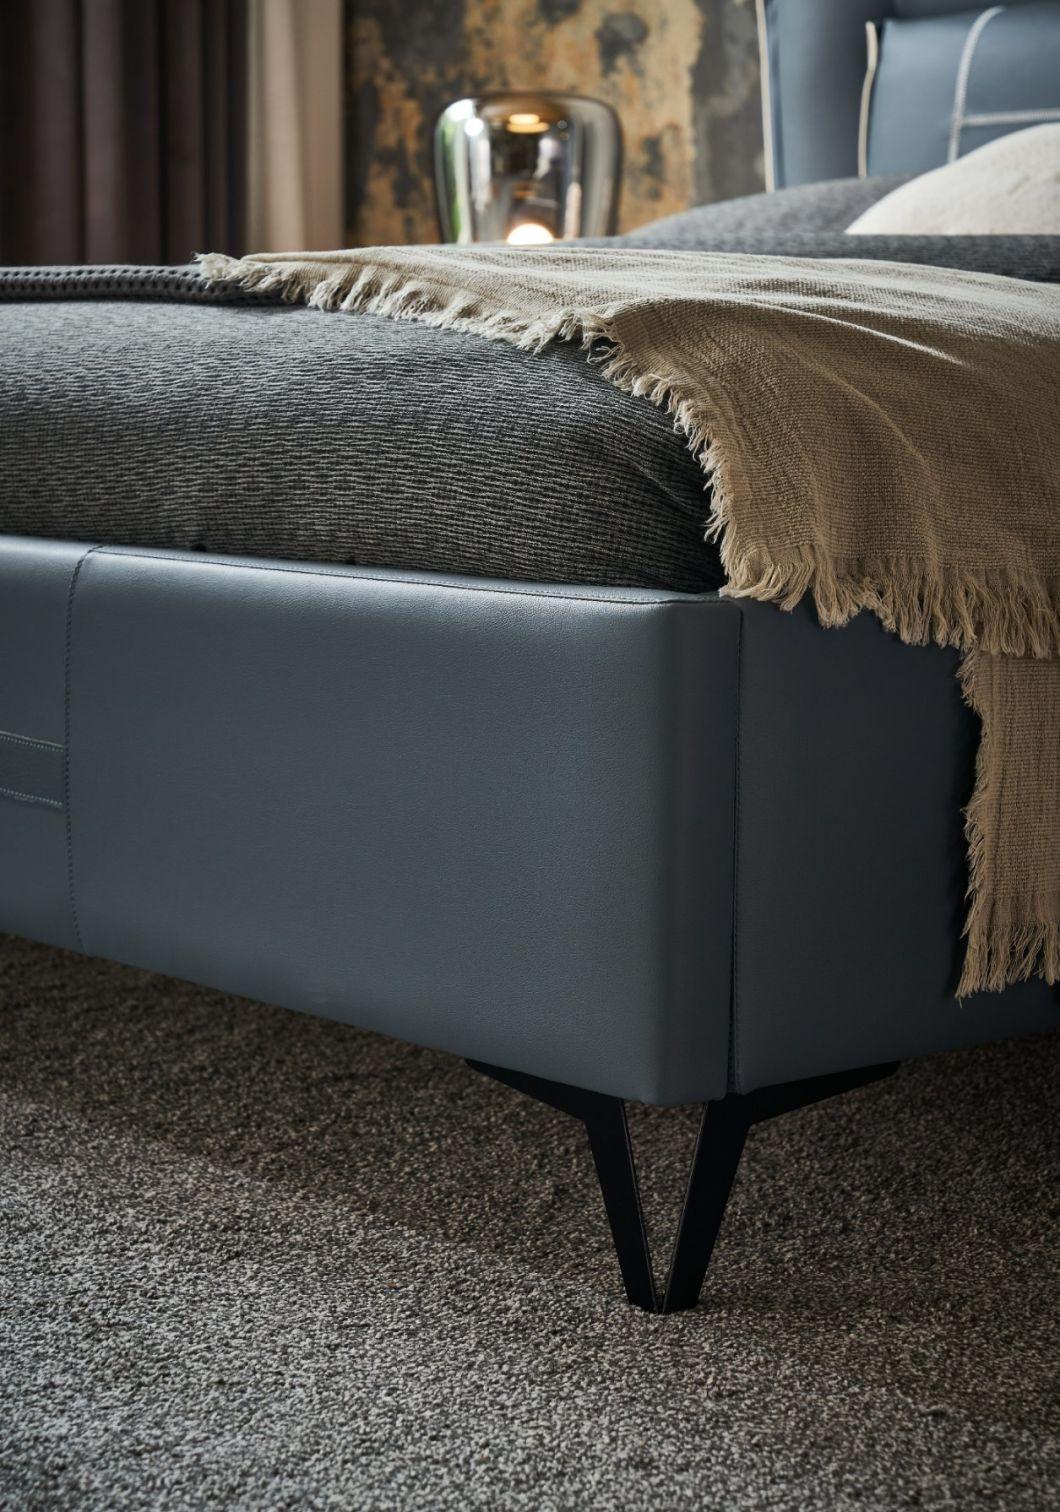 New Bed Designer Beds Bedroom Furniture Set King Bed Leather Bed a-GF007